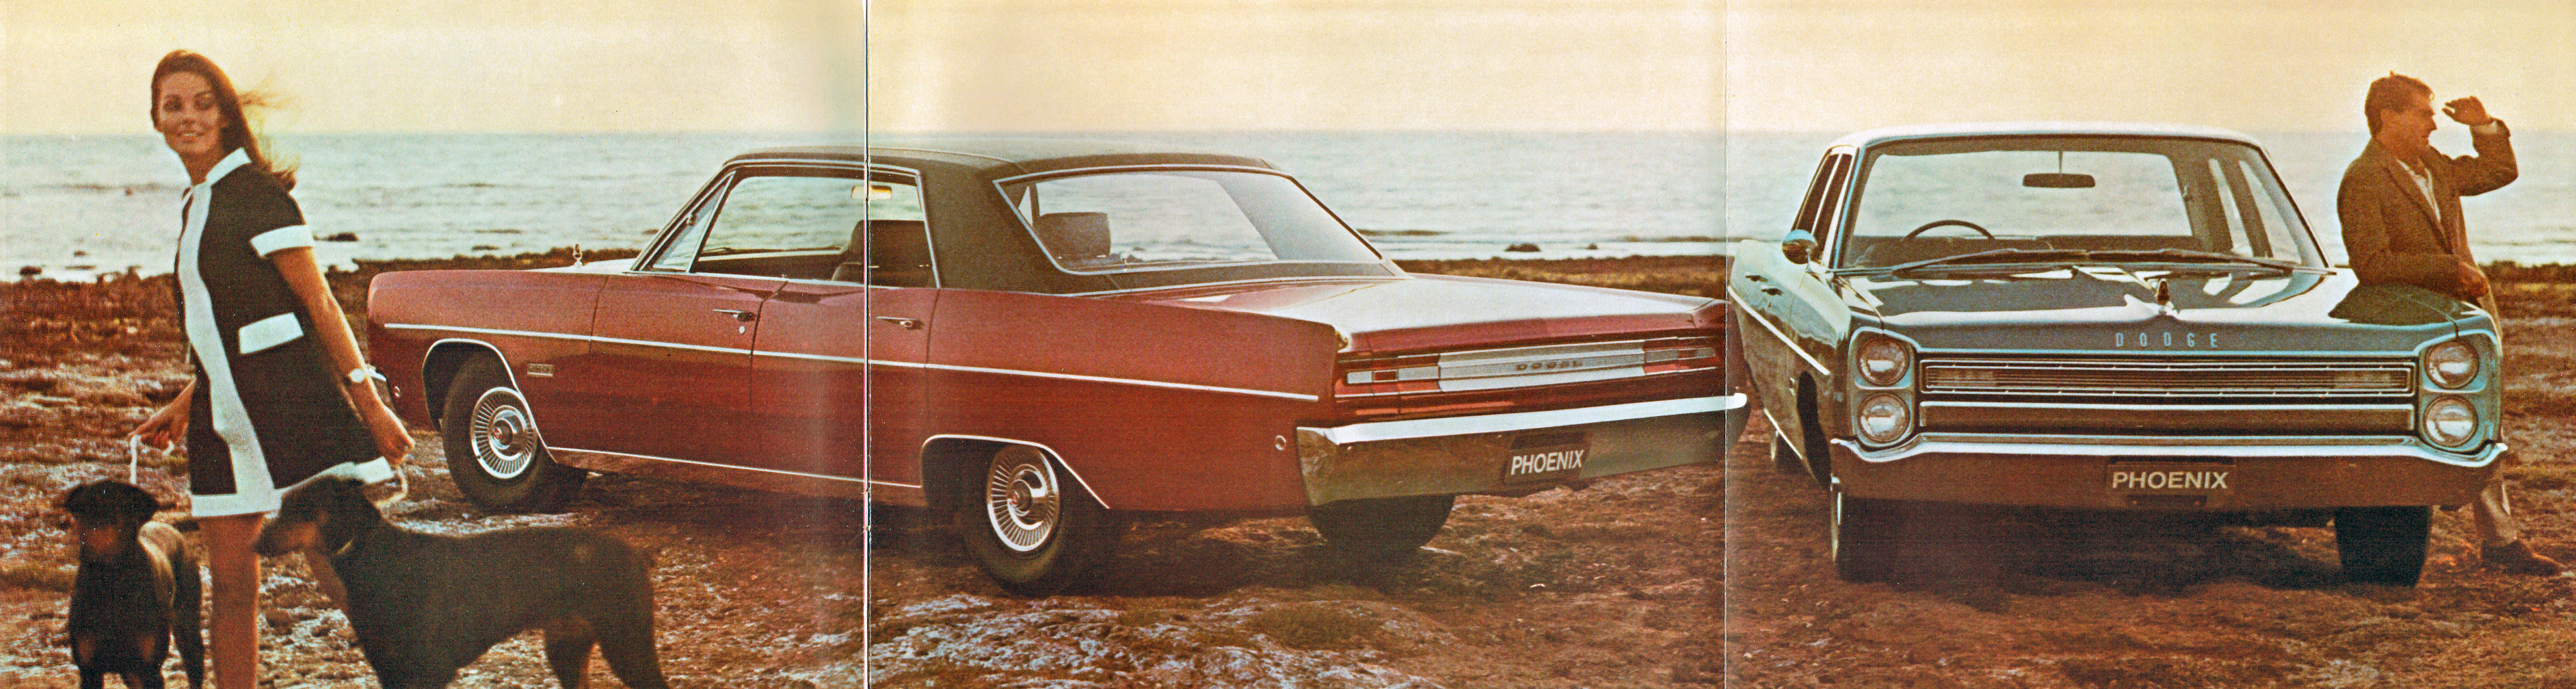 1968 Dodge Phoenix-02-03-04